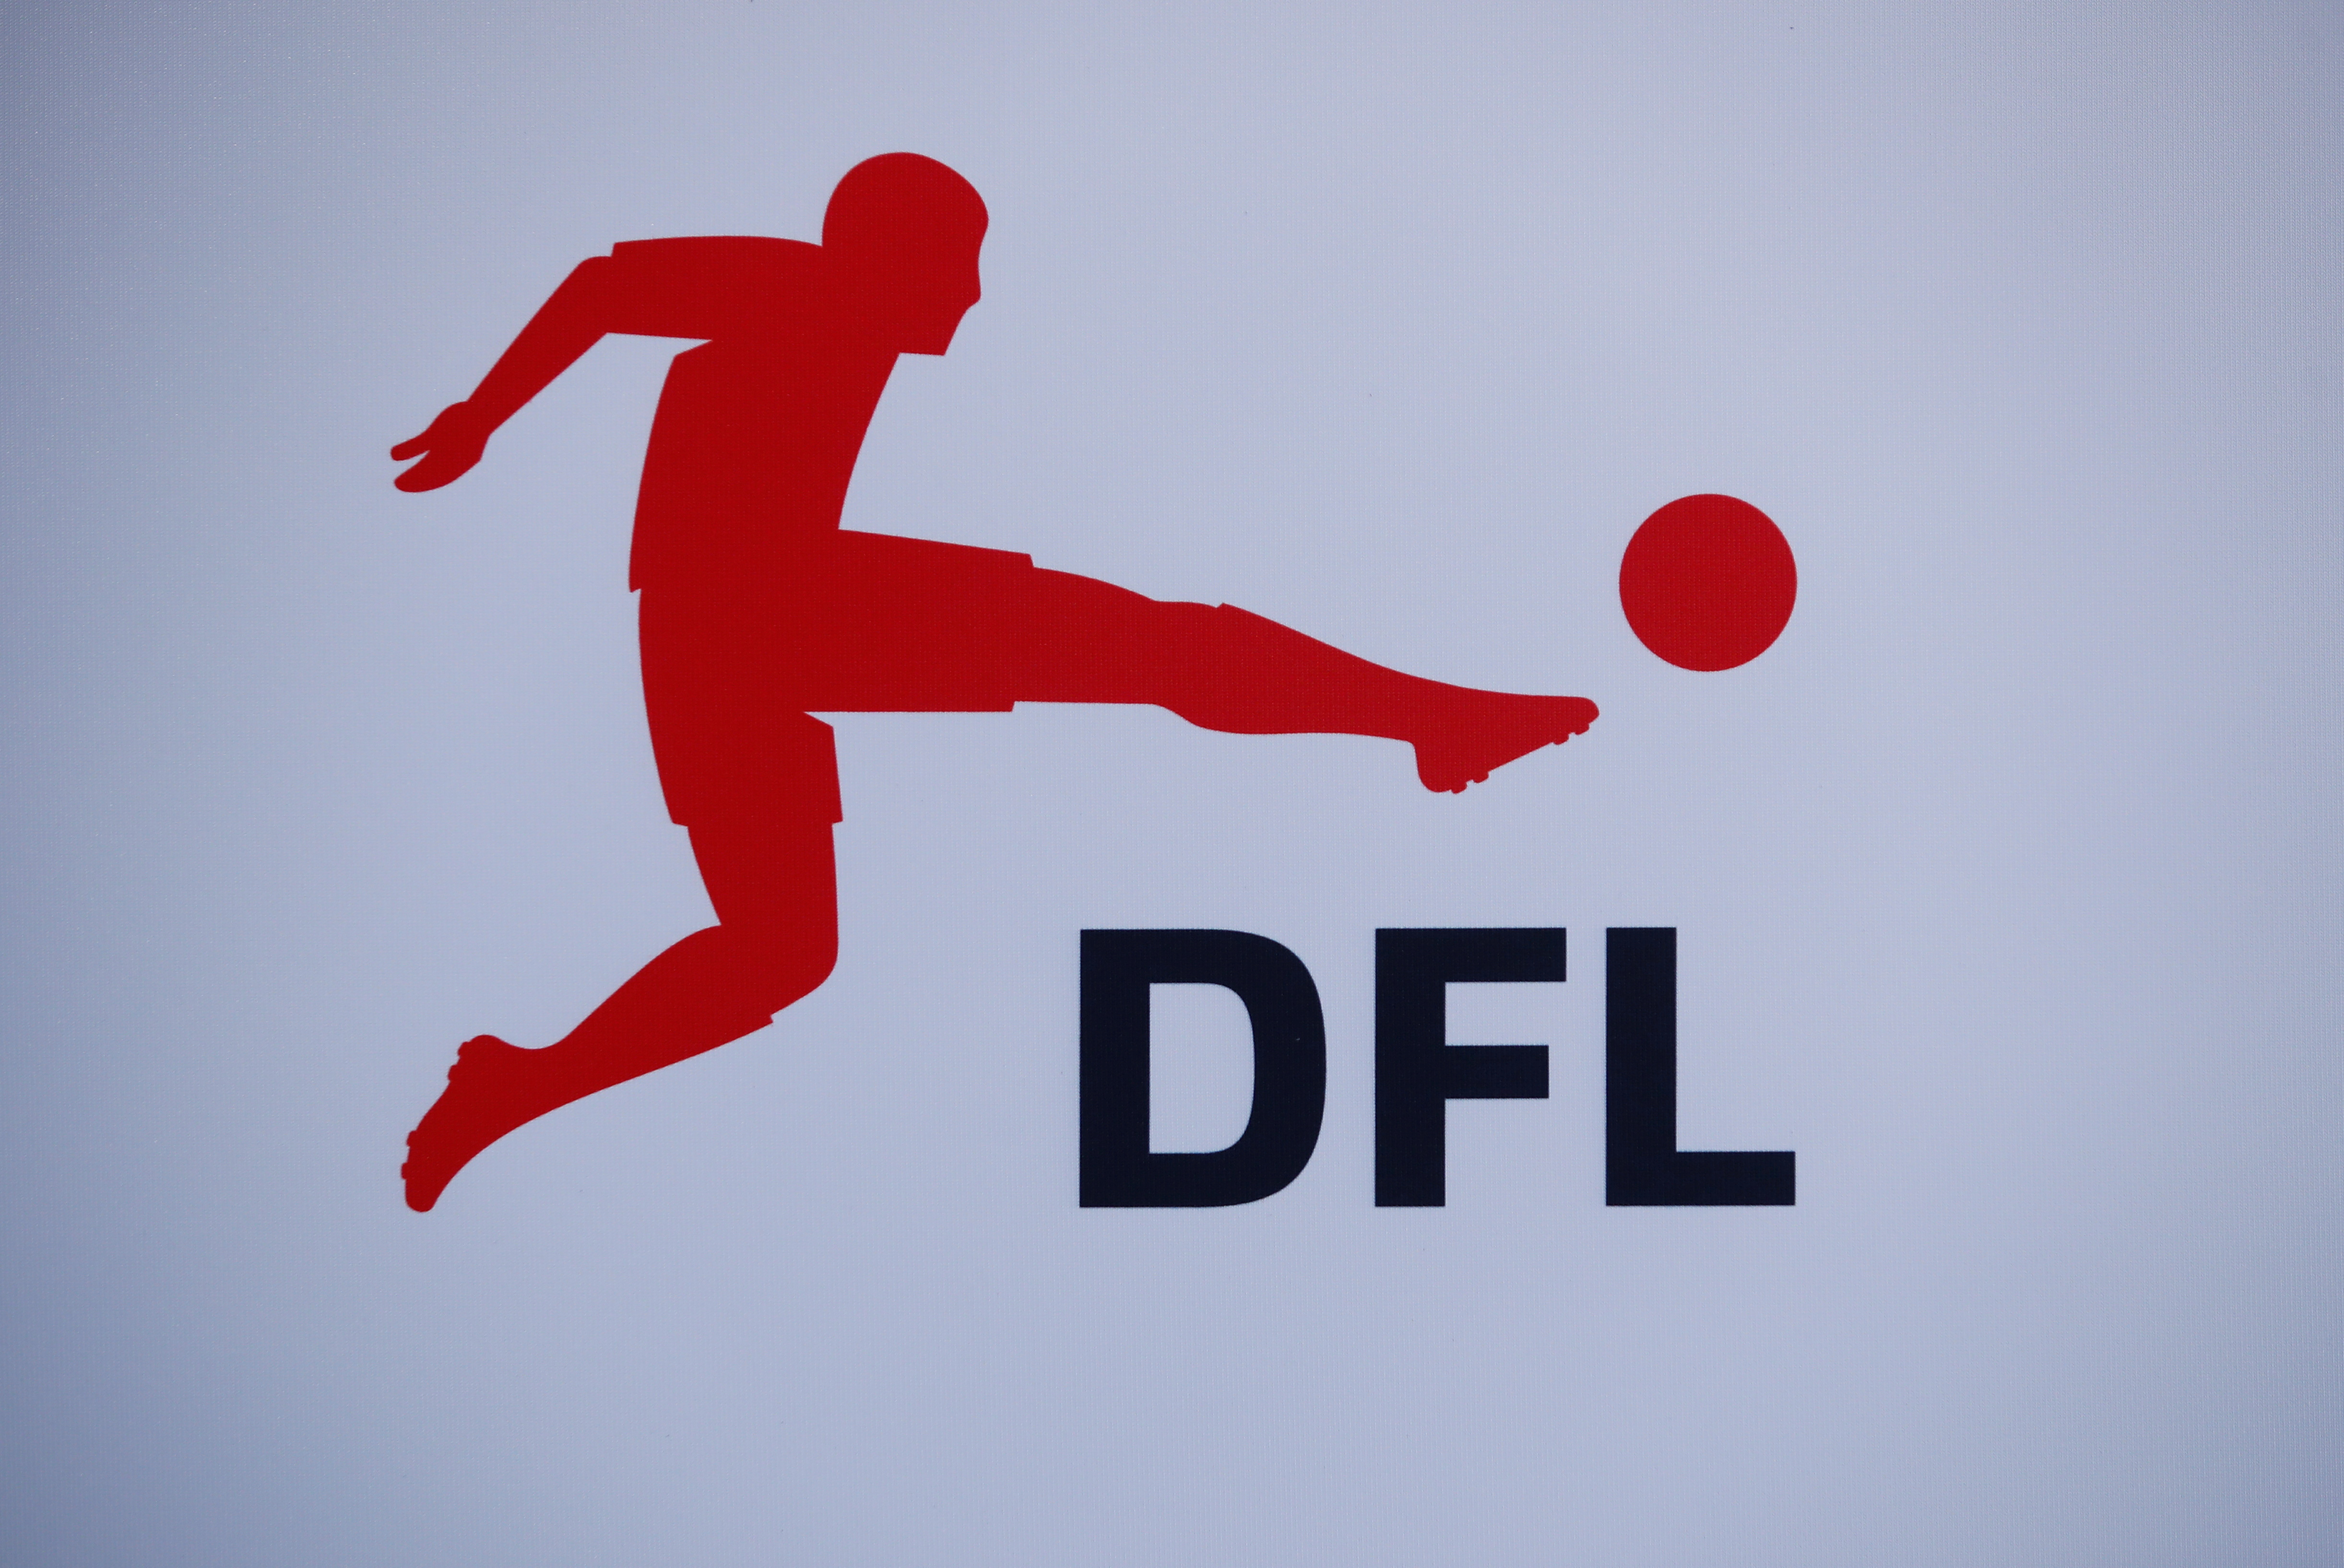 Bundesliga revenue drops more than 8.5% in 2020-21 season, says DFL - Reuters